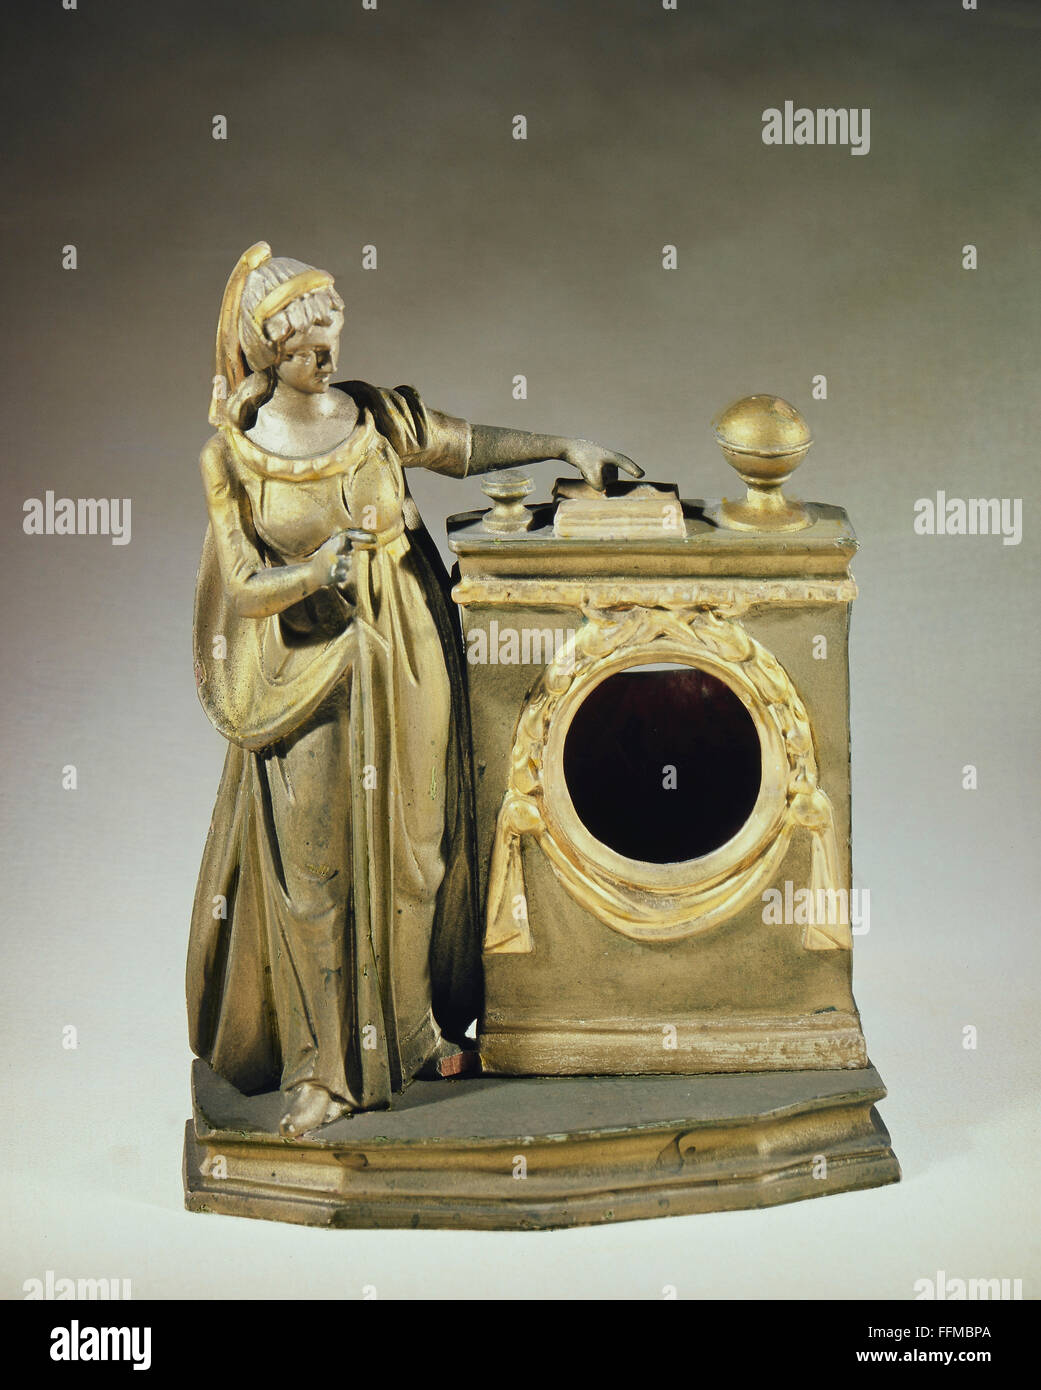 Horloges, rack pour une montre de poche, robe dame dans Empire, bois, sculpté, peint, sud de l'Allemagne, vers 1820, droits supplémentaires-Clearences-non disponible Banque D'Images